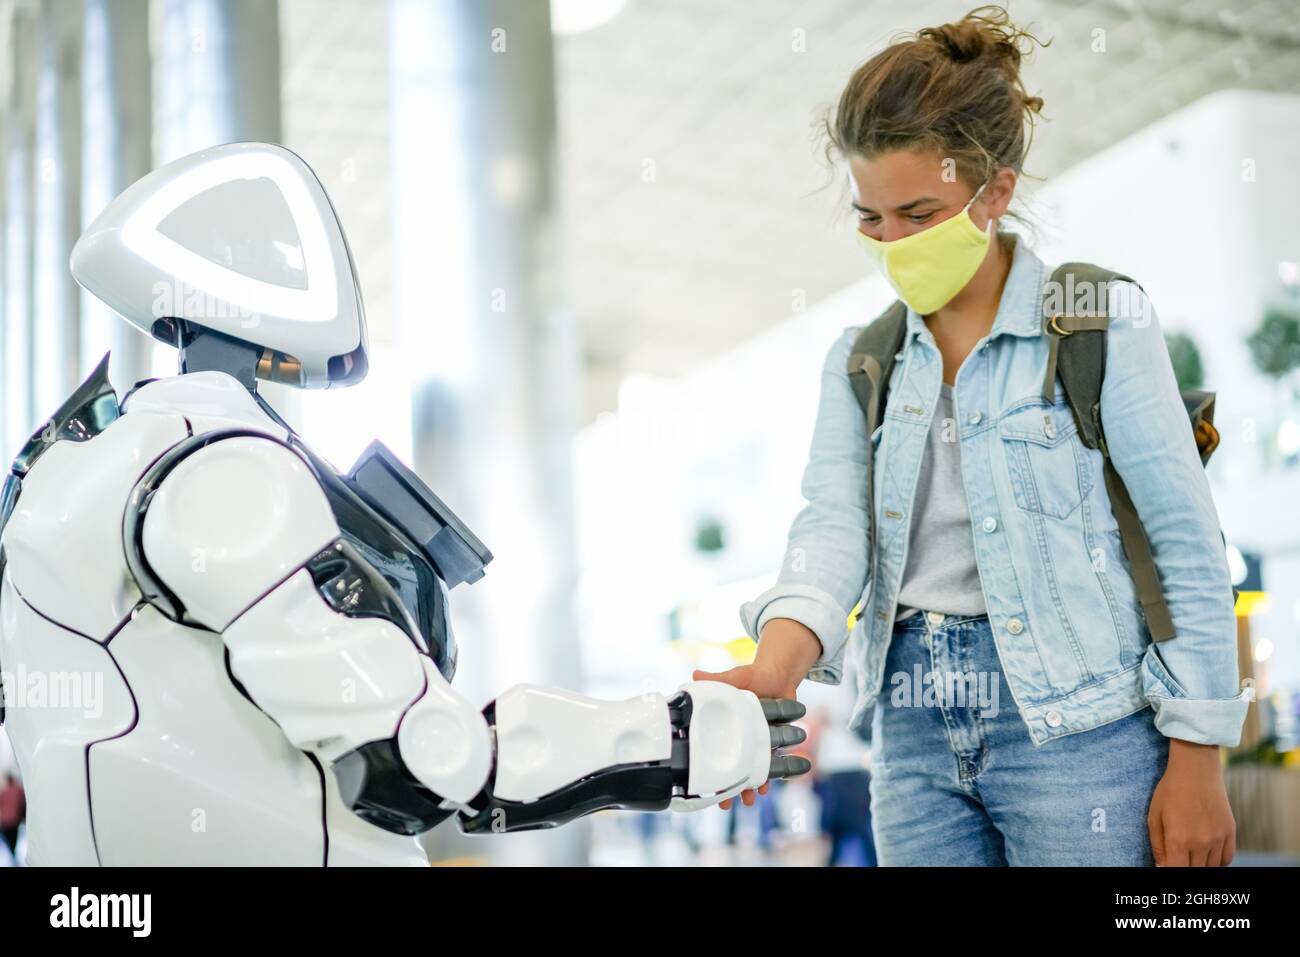 Robot e handshake umano in un luogo pubblico, concetto tecnologico moderno futuro. Assistente robotico intelligente con intelligenza artificiale e graziosa donna in maschera gialla Foto Stock